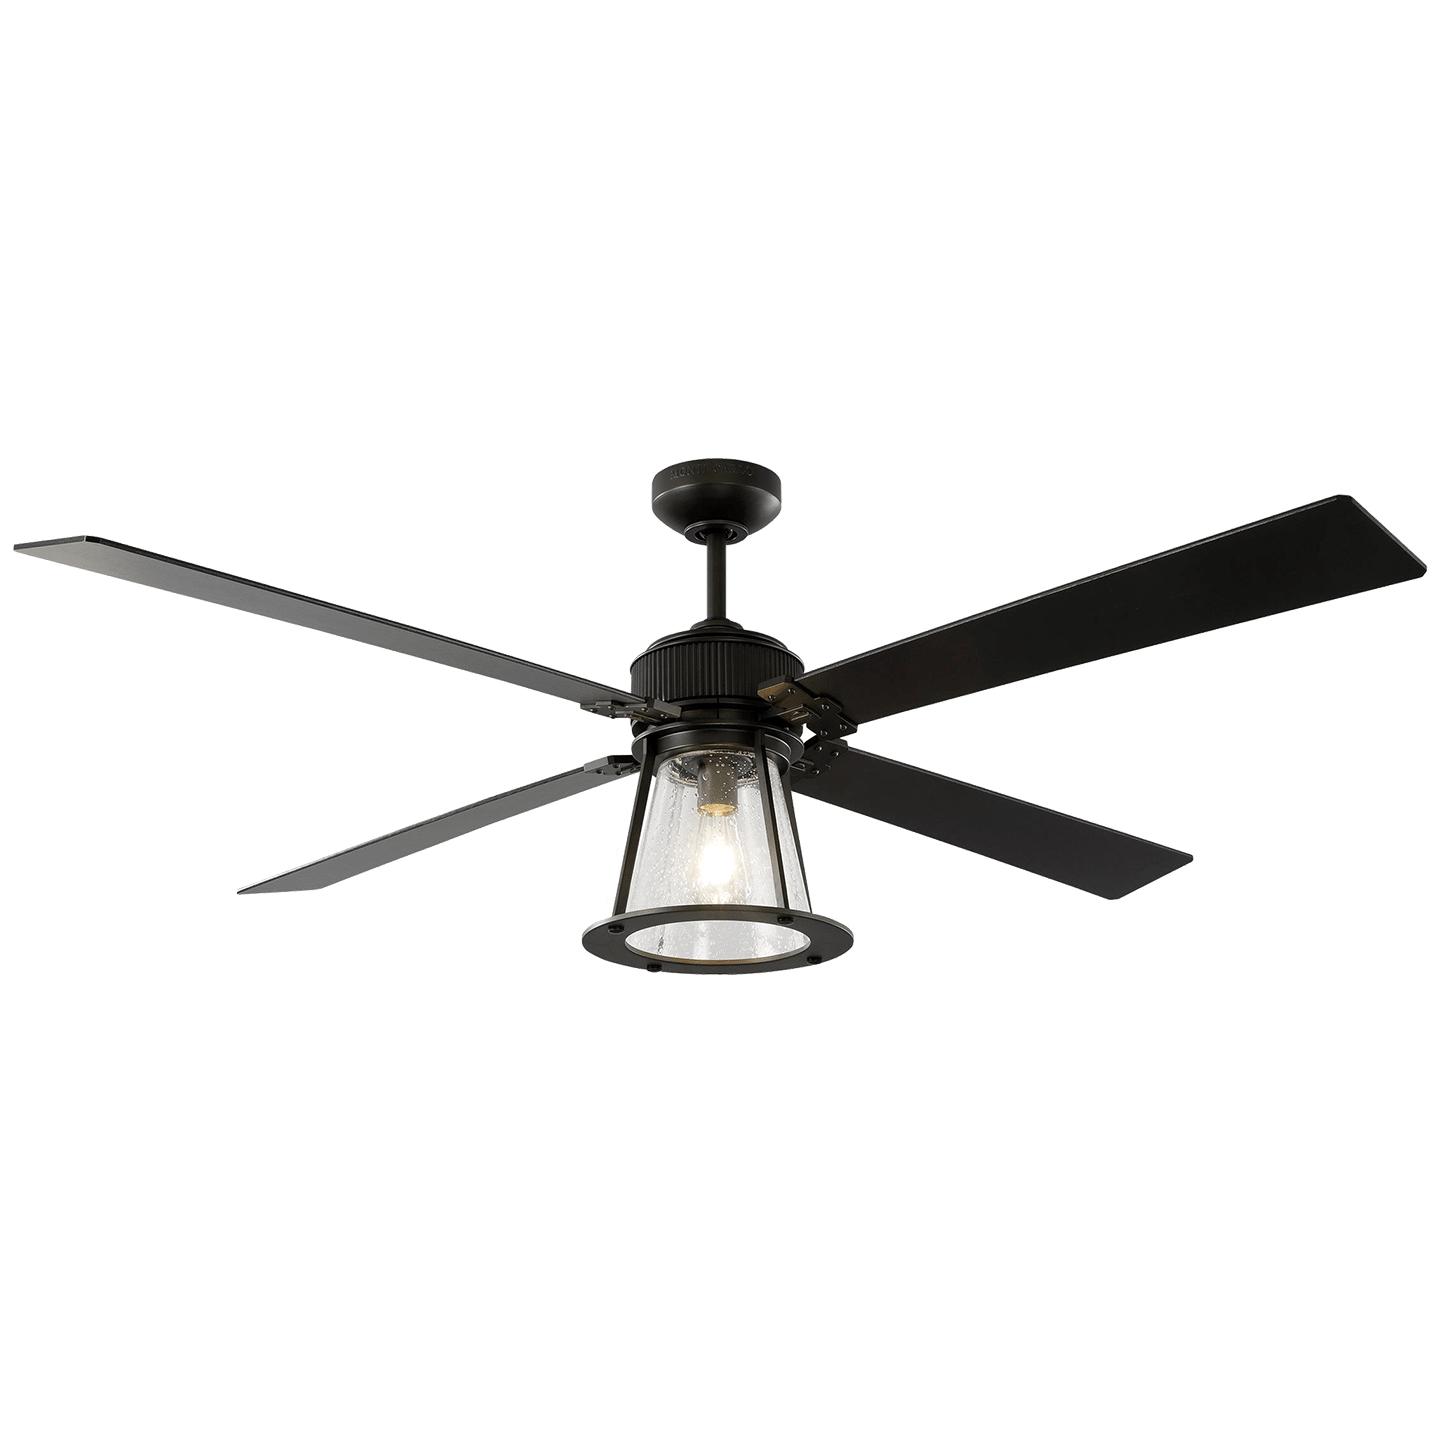 Купить Потолочный вентилятор Rockland 60" LED Ceiling Fan в интернет-магазине roooms.ru